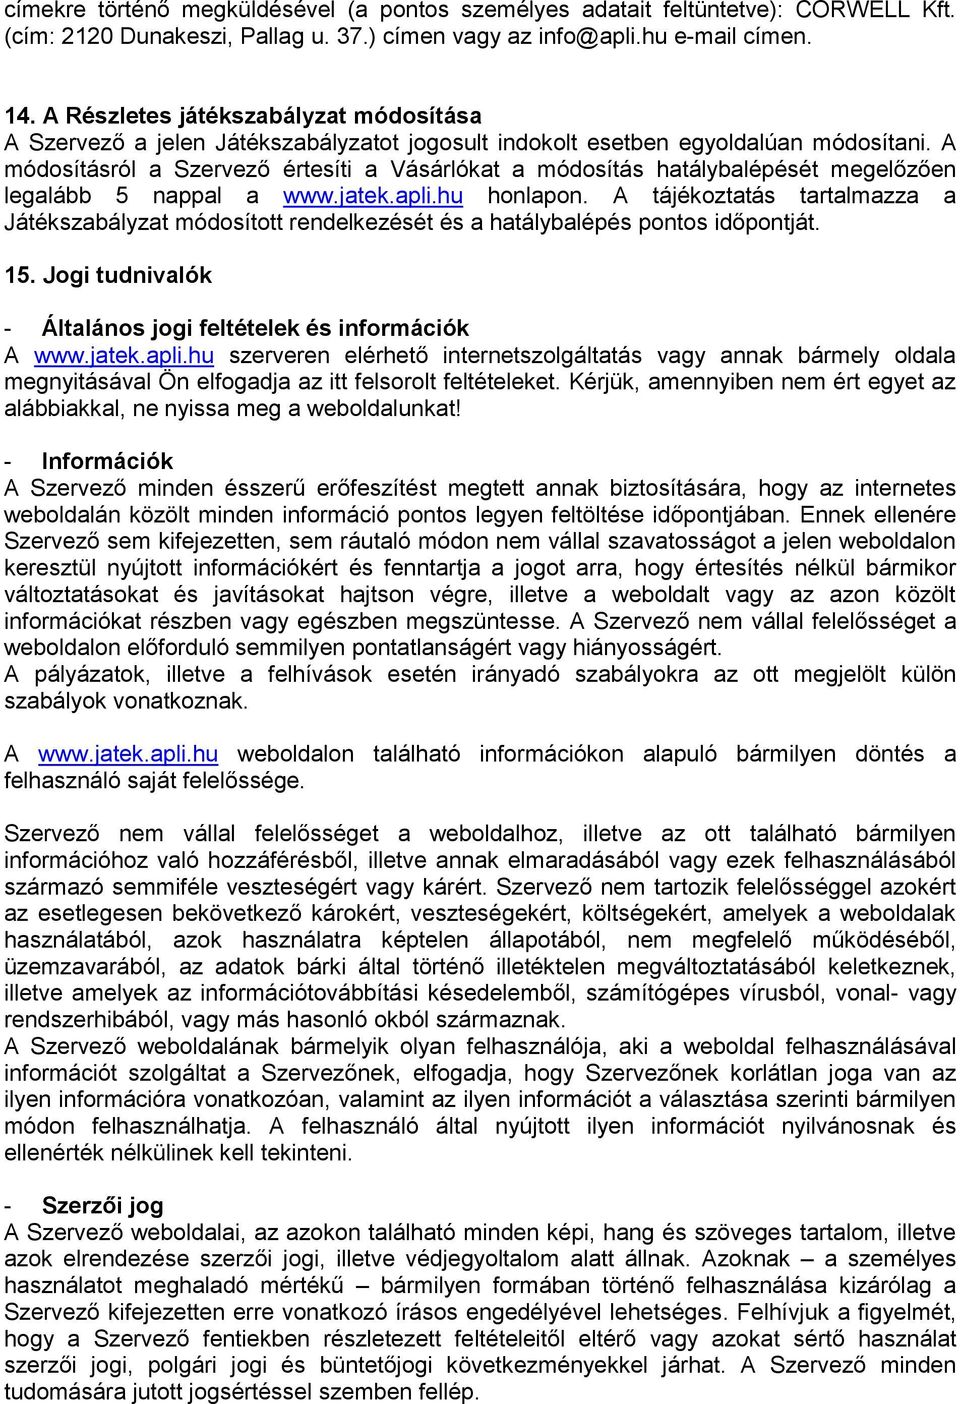 A módosításról a Szervező értesíti a Vásárlókat a módosítás hatálybalépését megelőzően legalább 5 nappal a www.jatek.apli.hu honlapon.